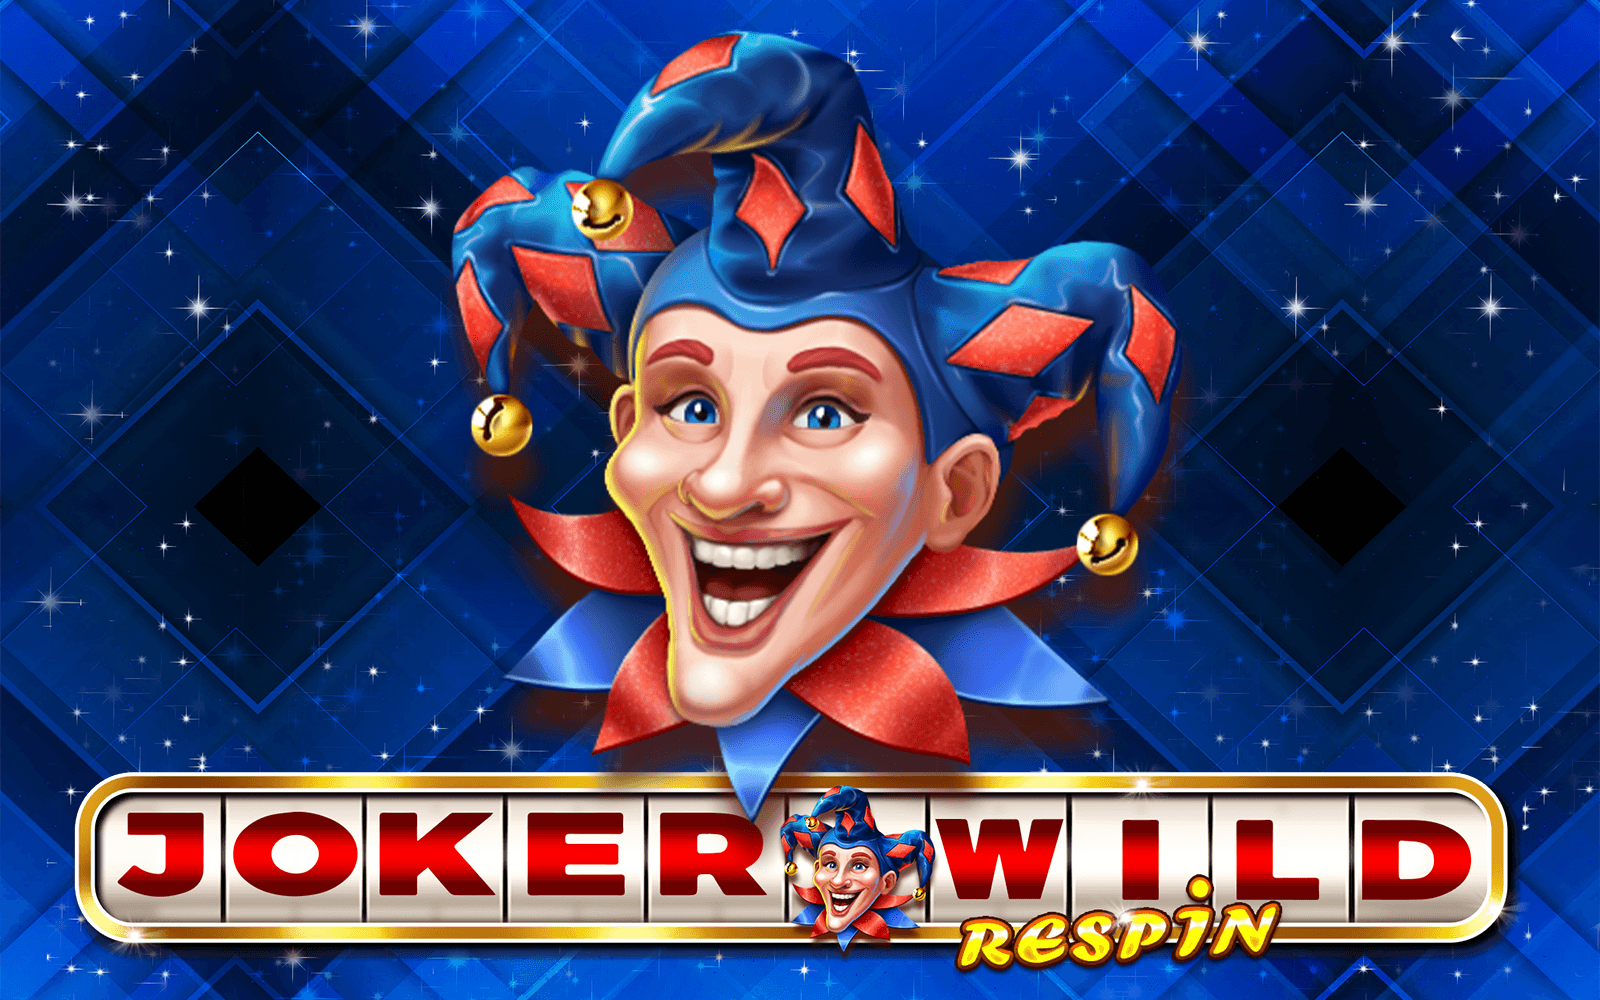 Gioca a Joker Wild Respin sul casino online Starcasino.be